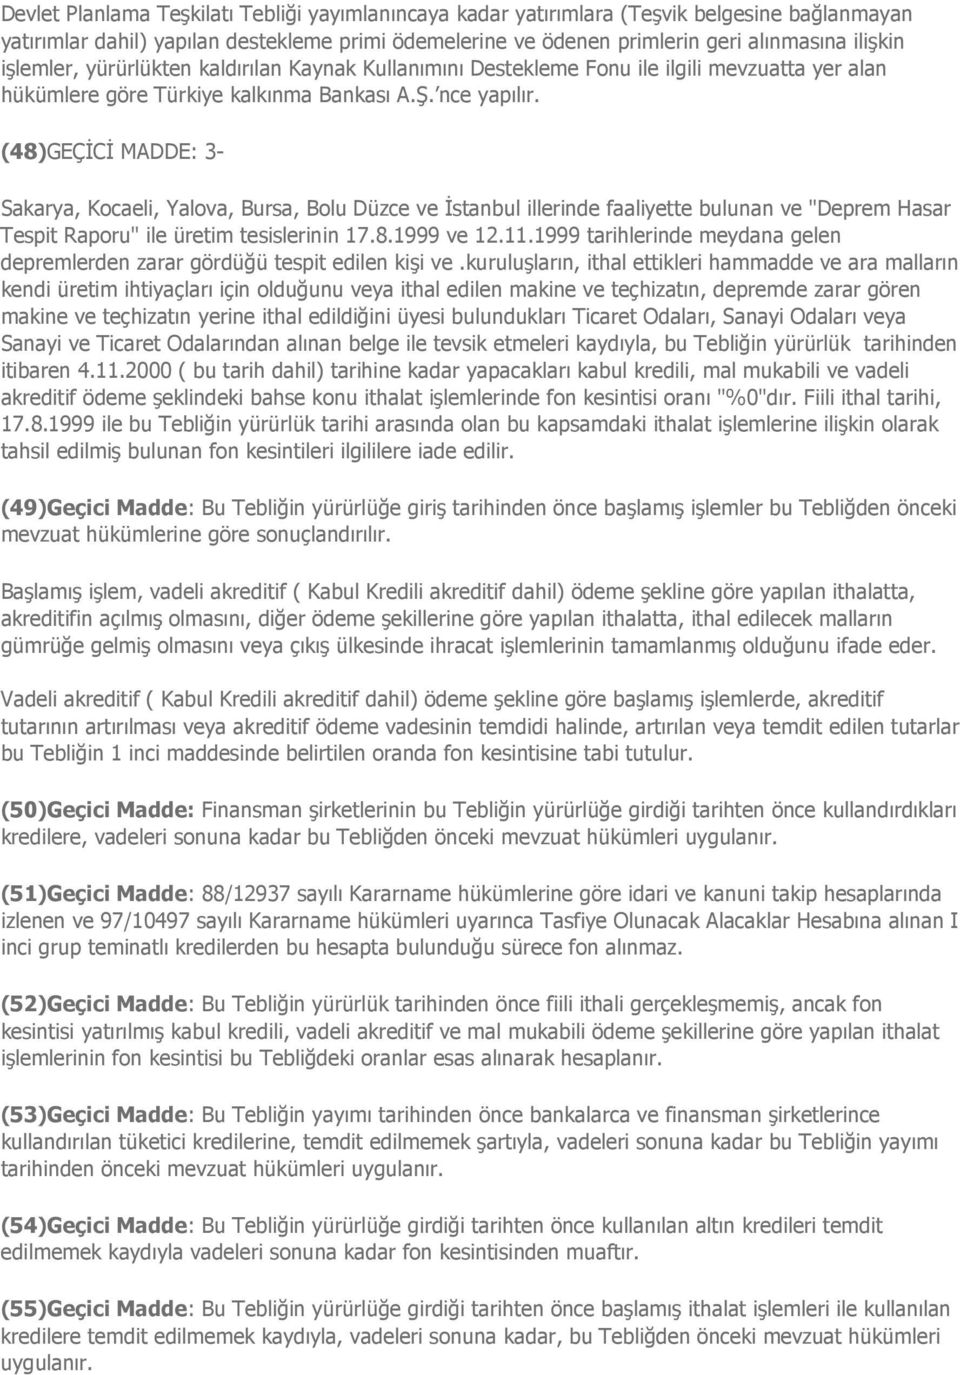 (48)GEÇĐCĐ MADDE: 3- Sakarya, Kocaeli, Yalova, Bursa, Bolu Düzce ve Đstanbul illerinde faaliyette bulunan ve "Deprem Hasar Tespit Raporu" ile üretim tesislerinin 17.8.1999 ve 12.11.